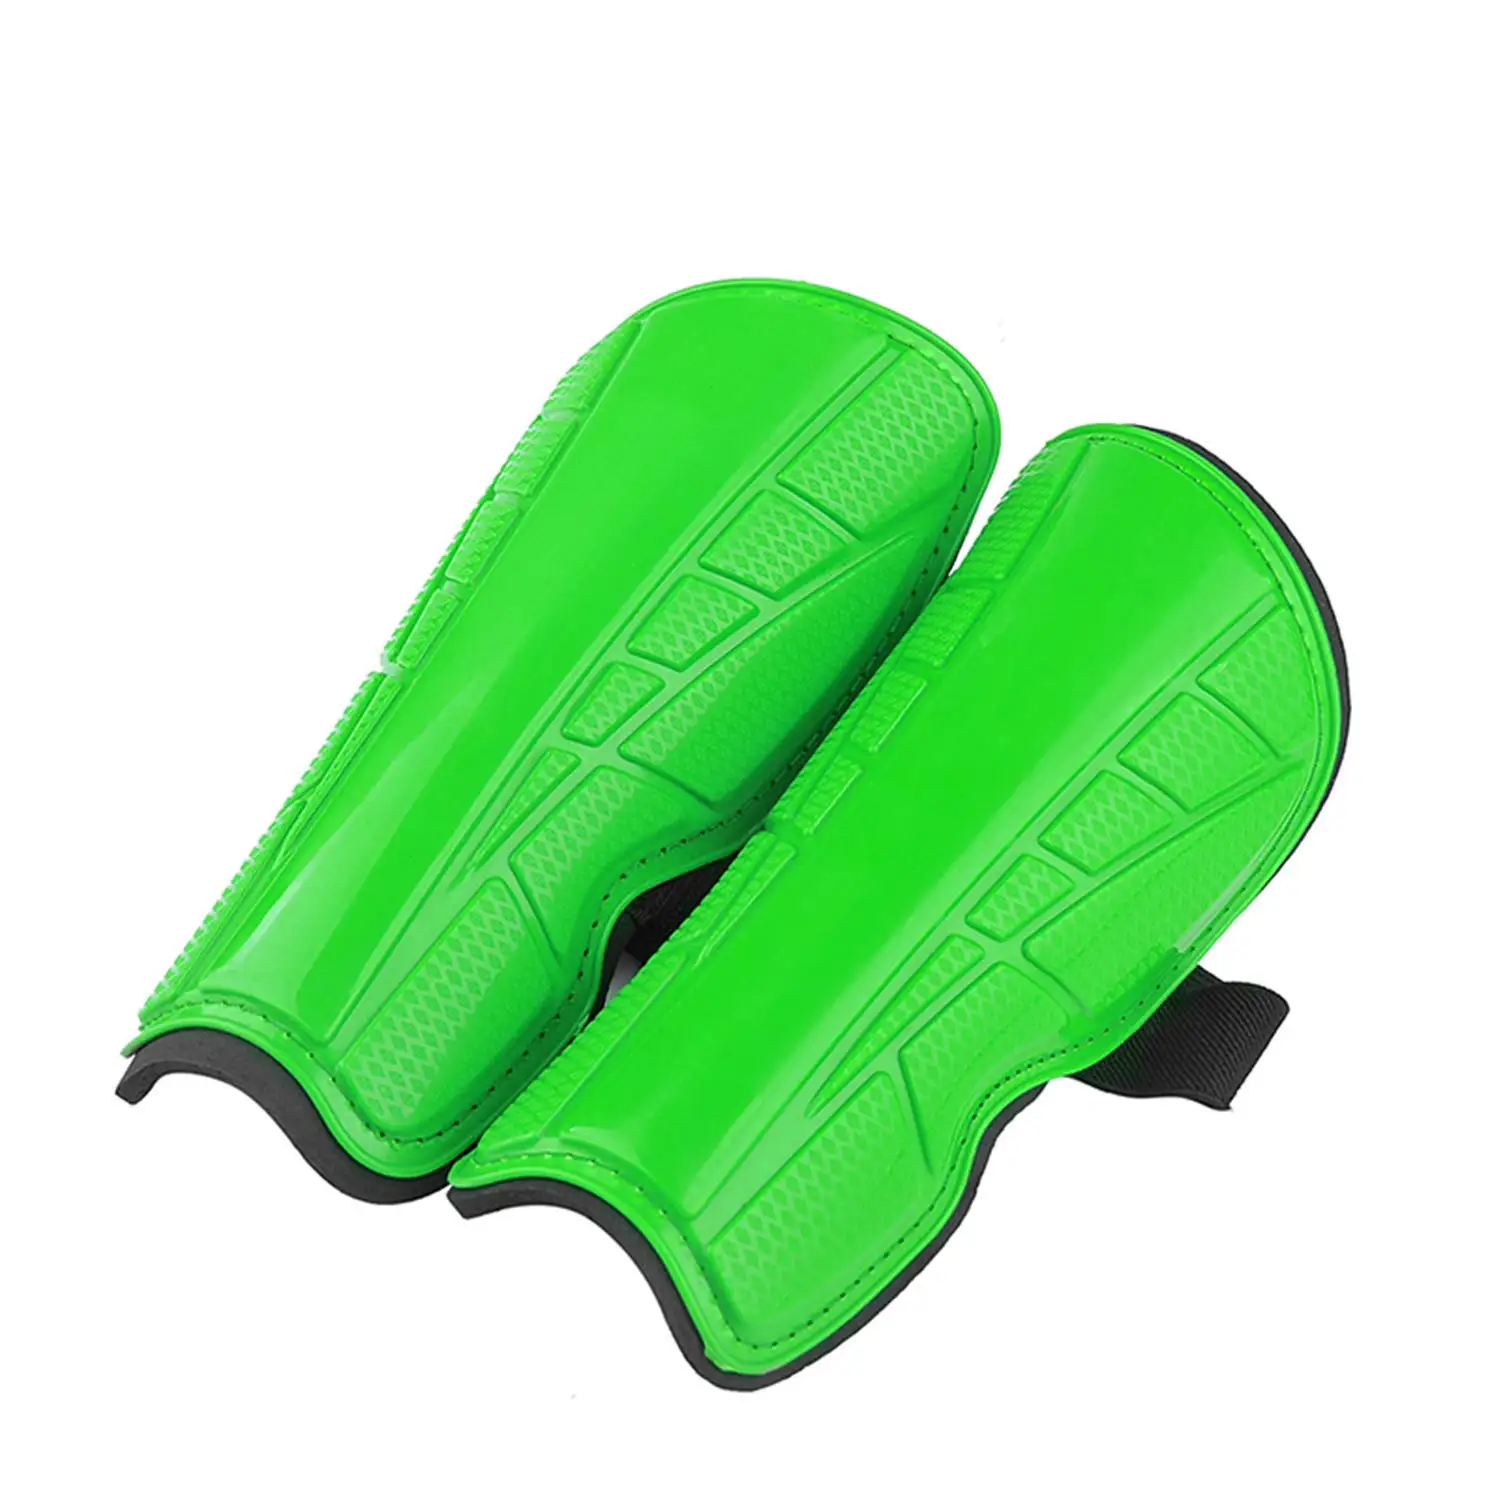 Щитки Для Голени профессиональные спортивные футбольные защита для ног Детские Щитки Для Голени детское Защитное снаряжение для голени футбольное тренировочное оборудование